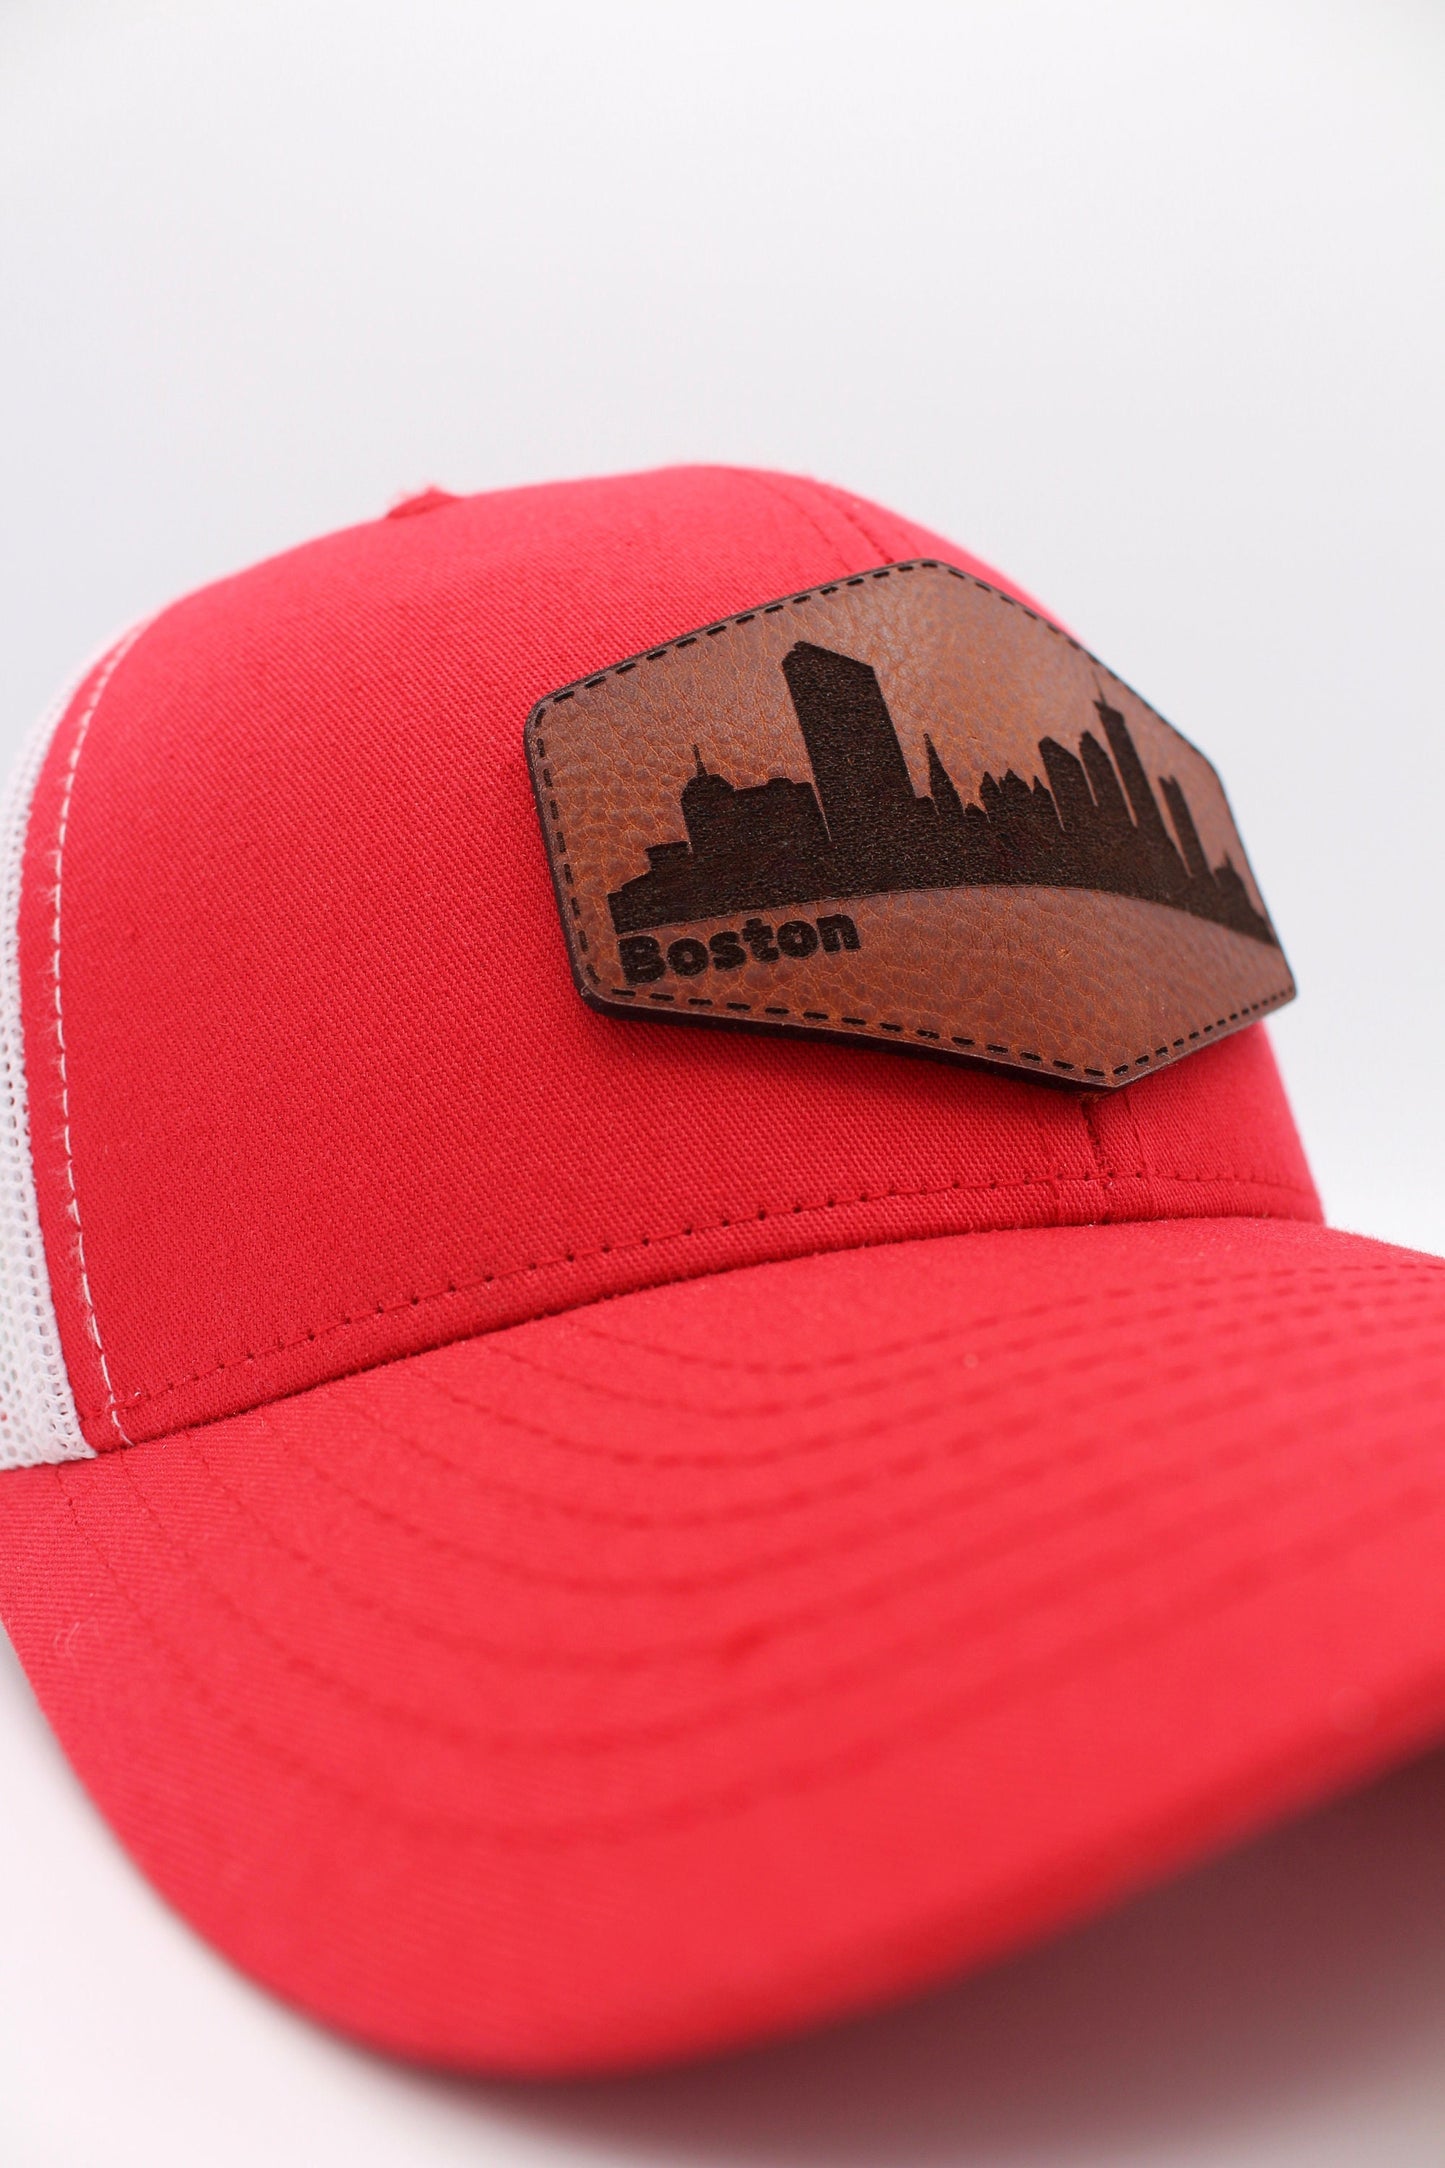 City of Boston Skyline Trucker Snapback Hat